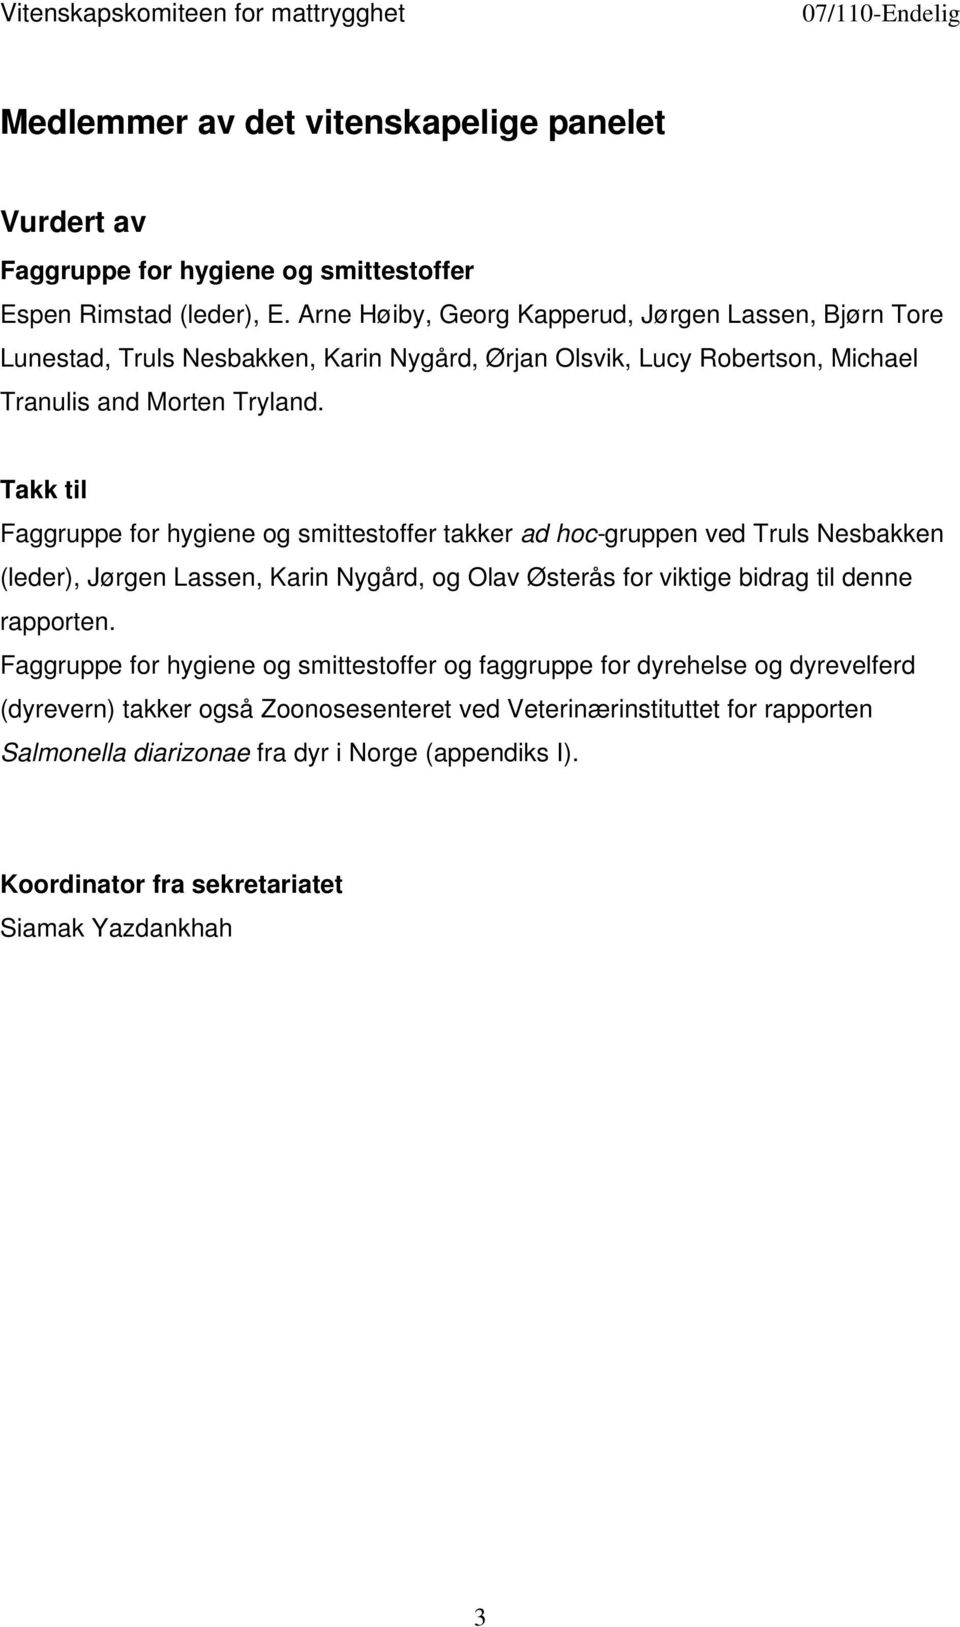 Takk til Faggruppe for hygiene og smittestoffer takker ad hoc-gruppen ved Truls Nesbakken (leder), Jørgen Lassen, Karin Nygård, og Olav Østerås for viktige bidrag til denne